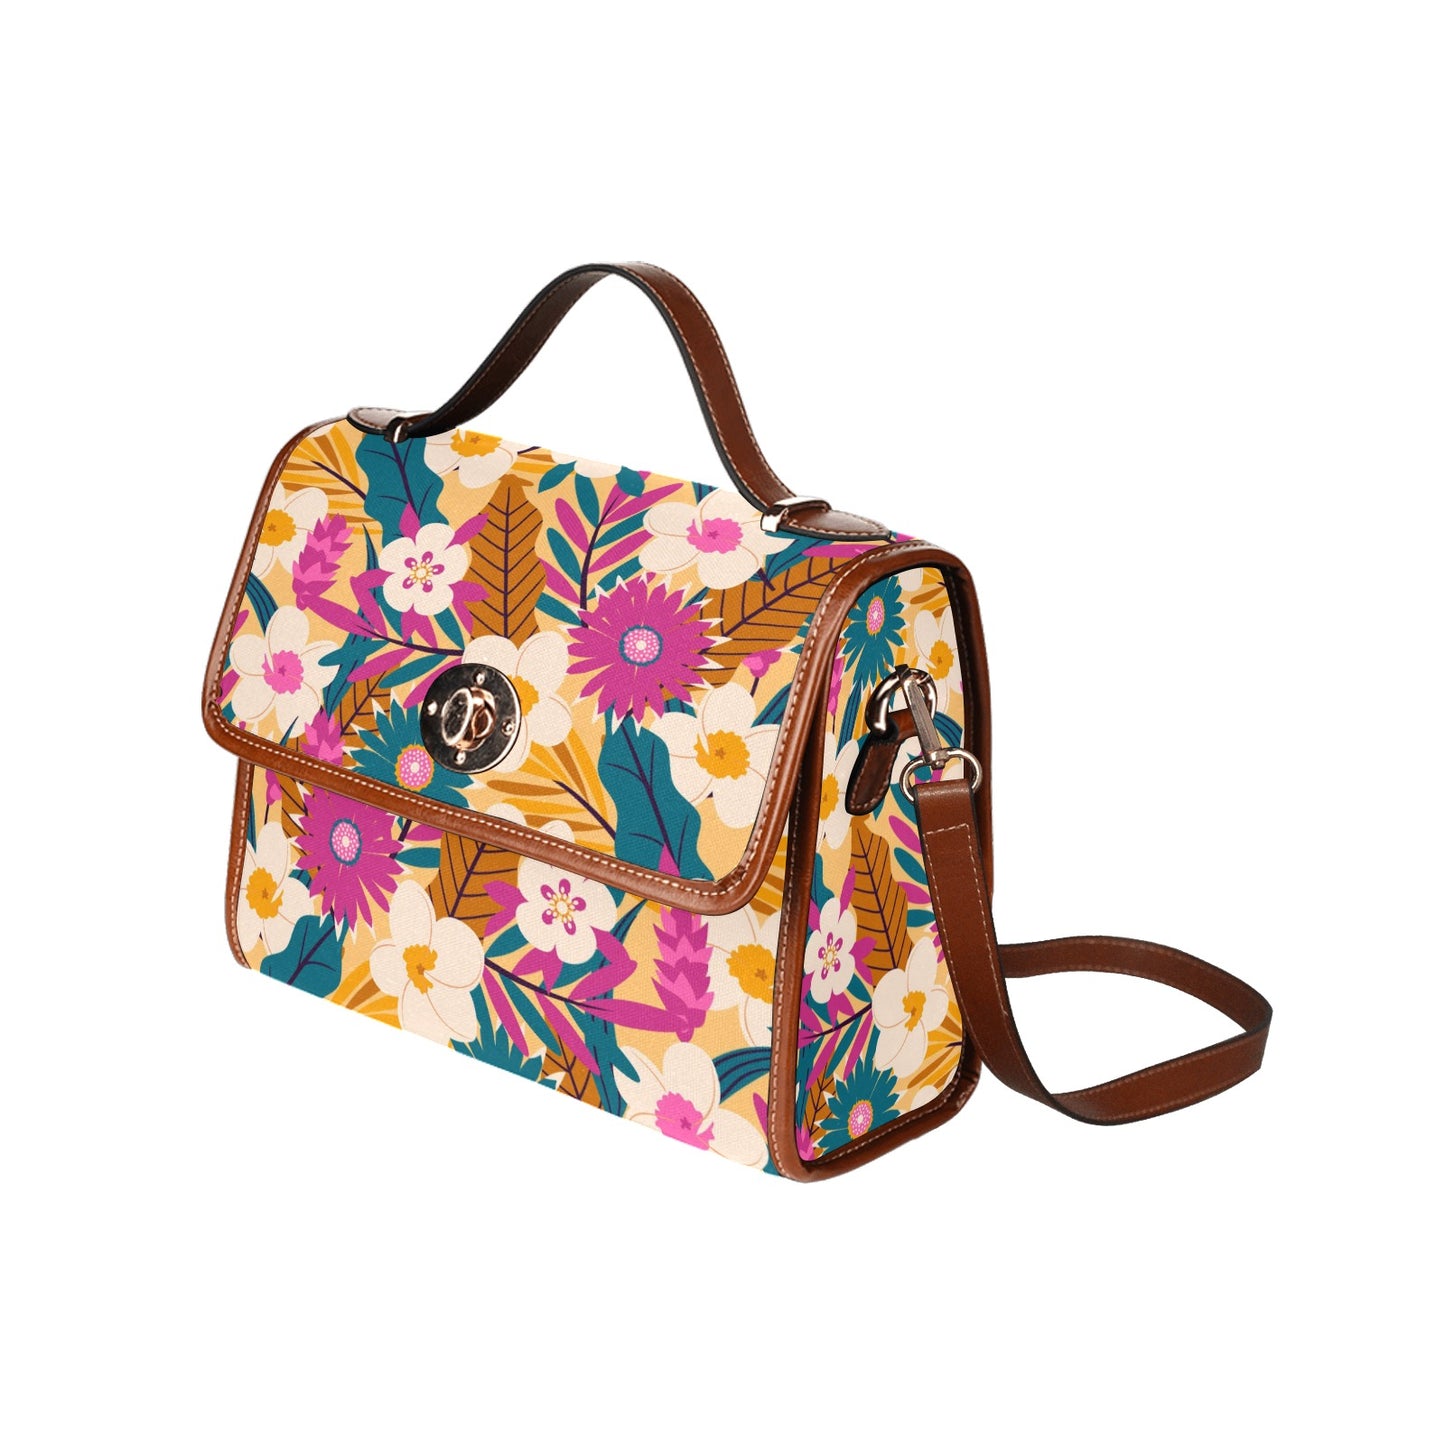 Women's Handbag, Retro Floral Handbag, Retro Handbag, Pink Teal Floral Handbag, Floral Purse, Vintage style handbag, Floral Satchel